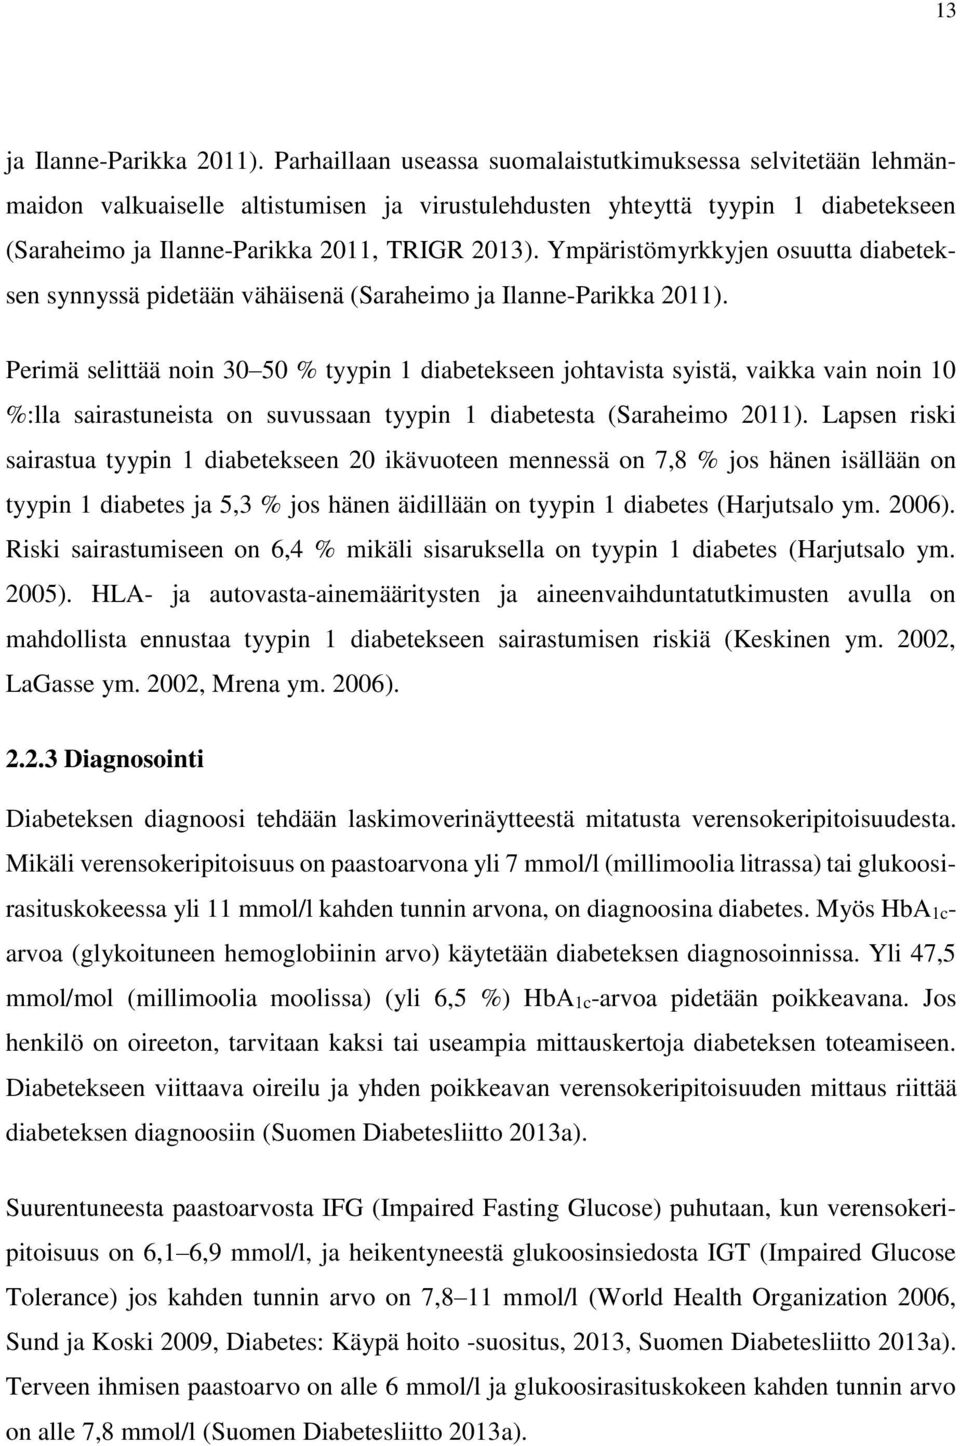 Ympäristömyrkkyjen osuutta diabeteksen synnyssä pidetään vähäisenä (Saraheimo ja Ilanne-Parikka 2011).